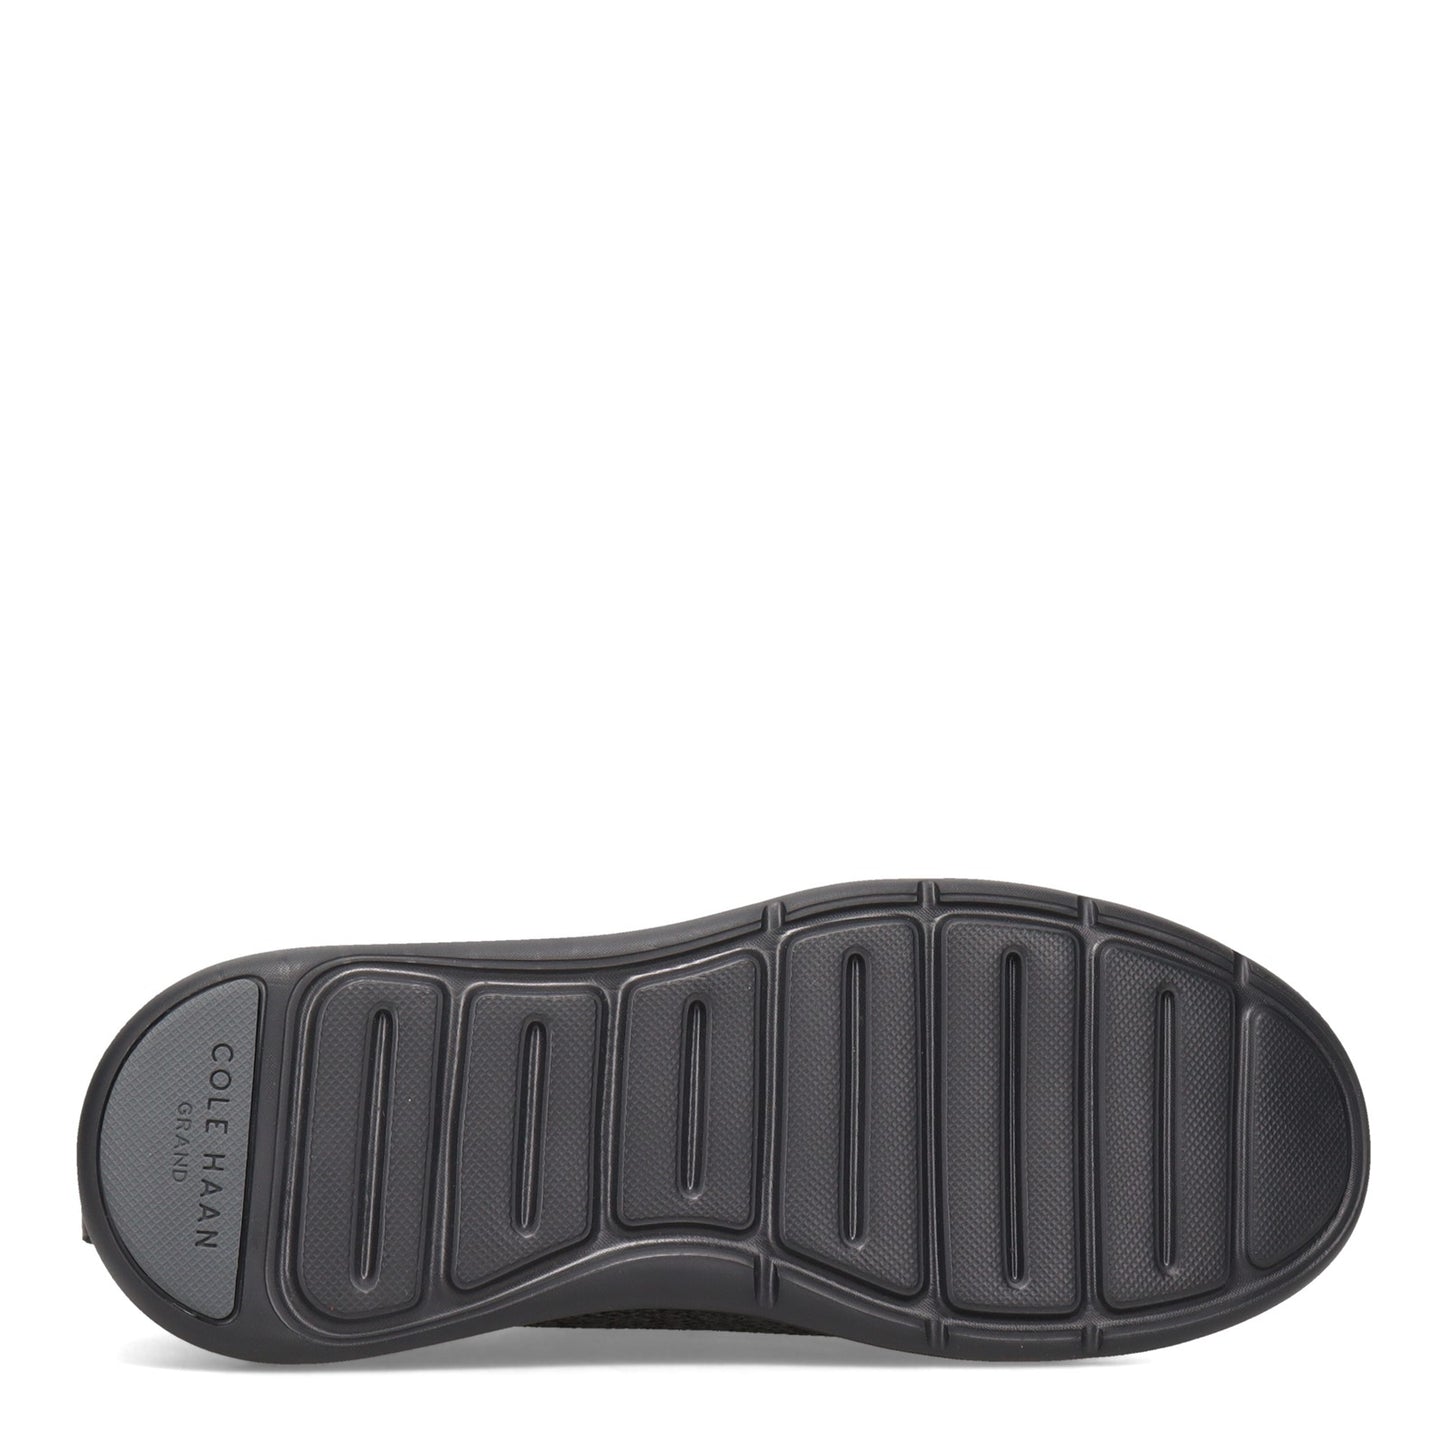 Peltz Shoes  Men's Cole Haan Grandsport Journey Sneaker BLACK MAGNET C32583